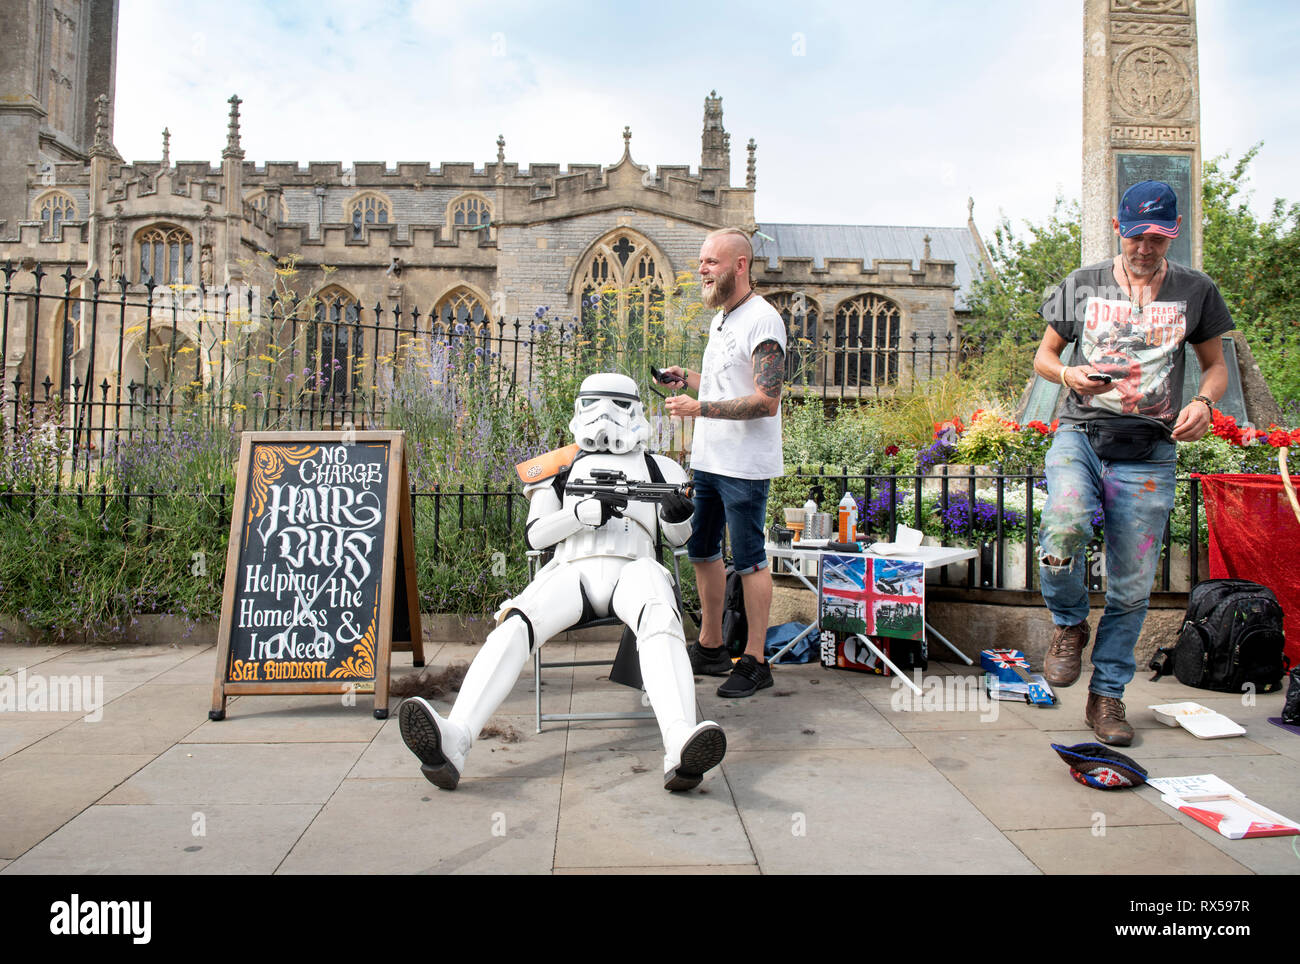 Ein Bewohner gekleidet wie ein Stormtrooper aus Star Wars mit der Straße Friseur bietet kostenlose Haarschnitte für Obdachlose in der High Street, Glastonbury, Großbritannien Stockfoto